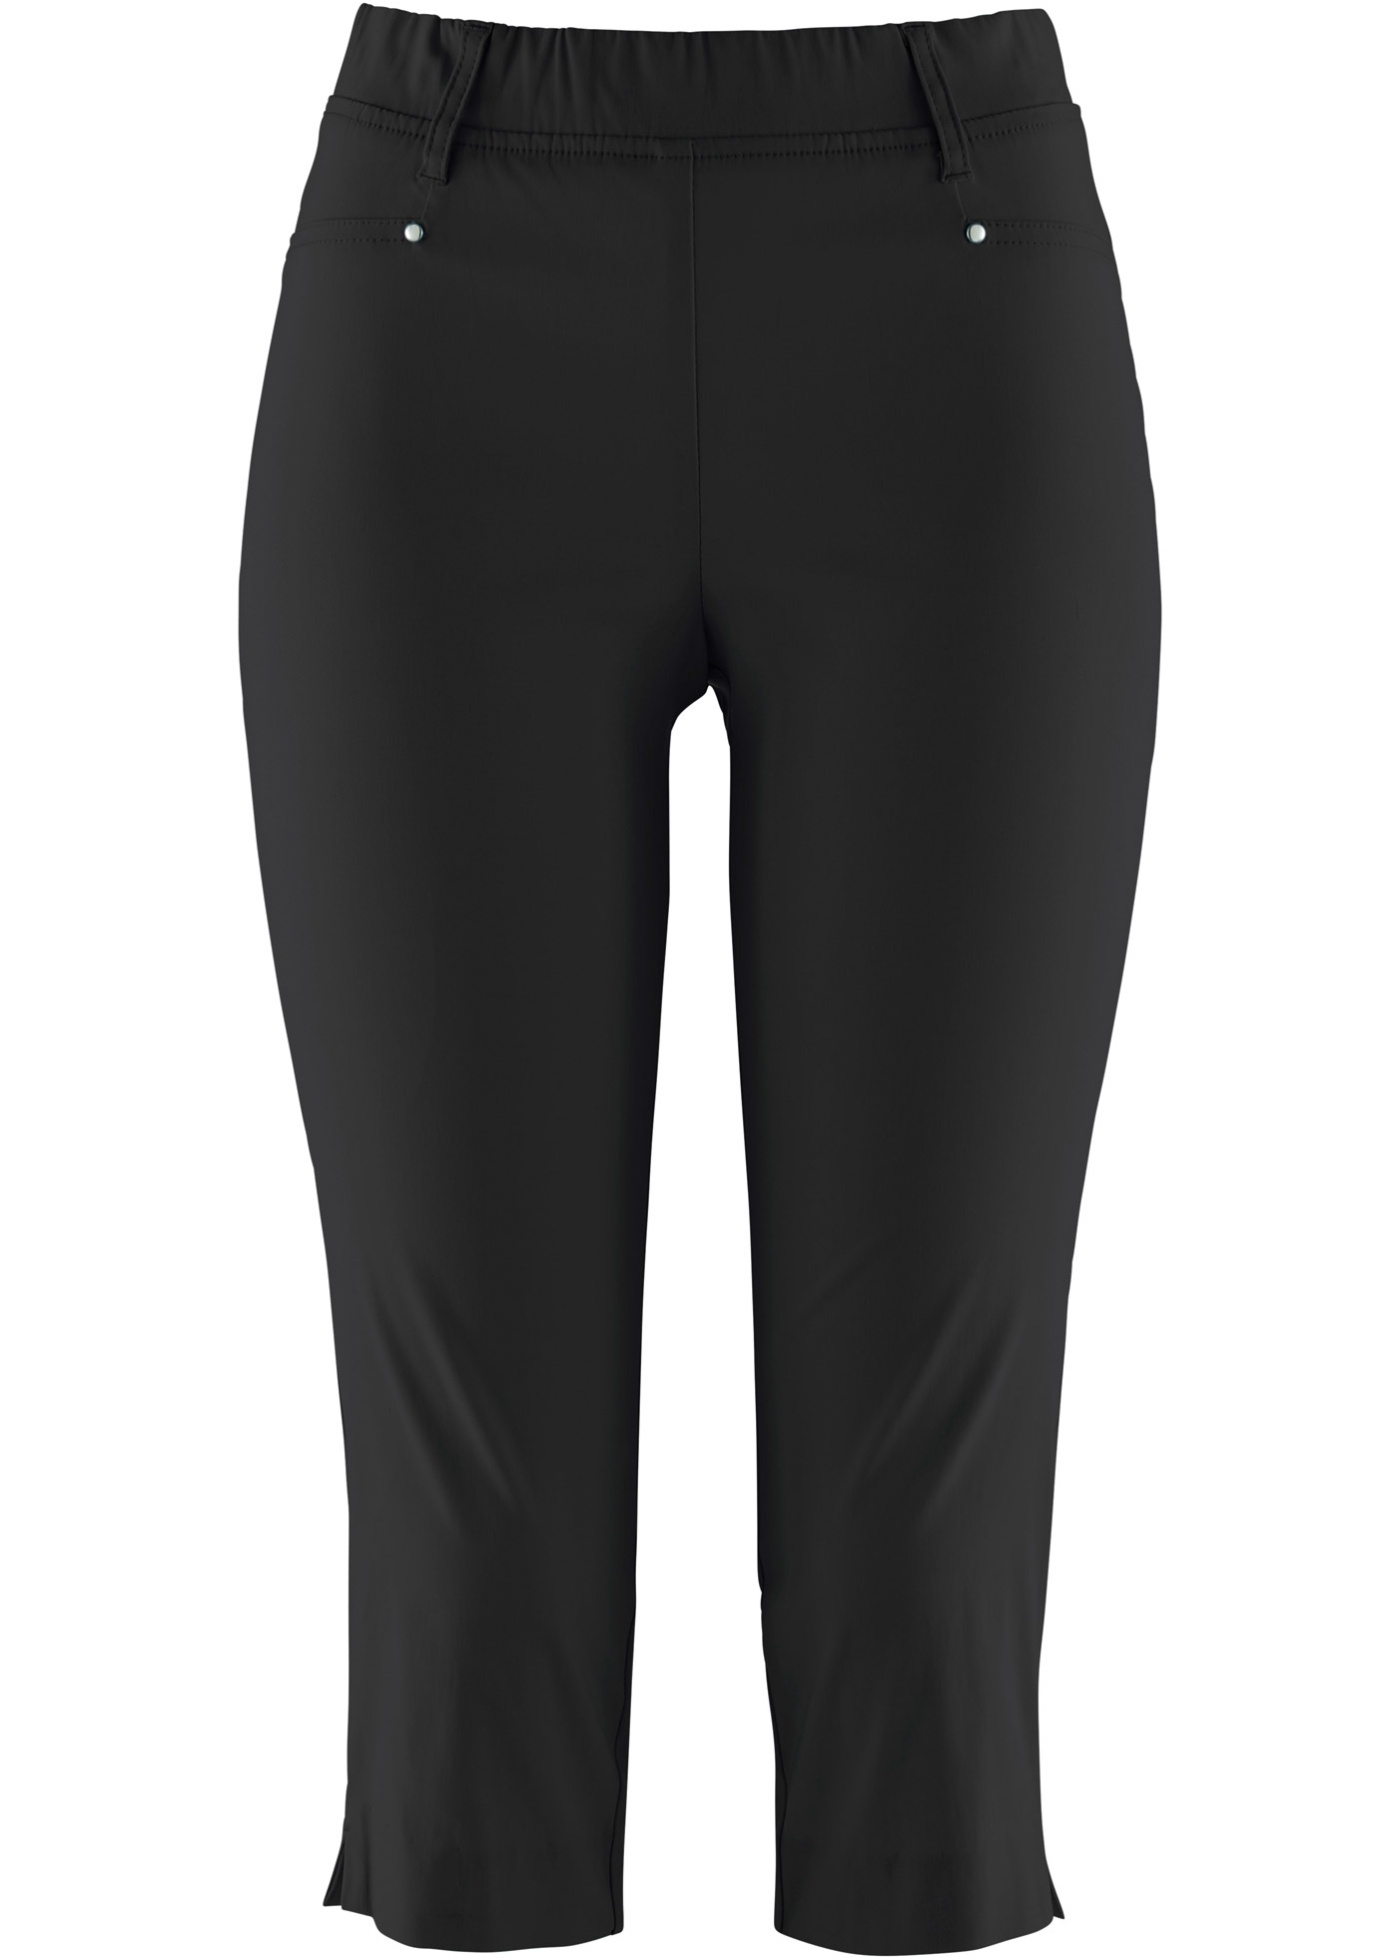 Pantaloni capri elasticizzati con elastico (Nero) - bpc selection